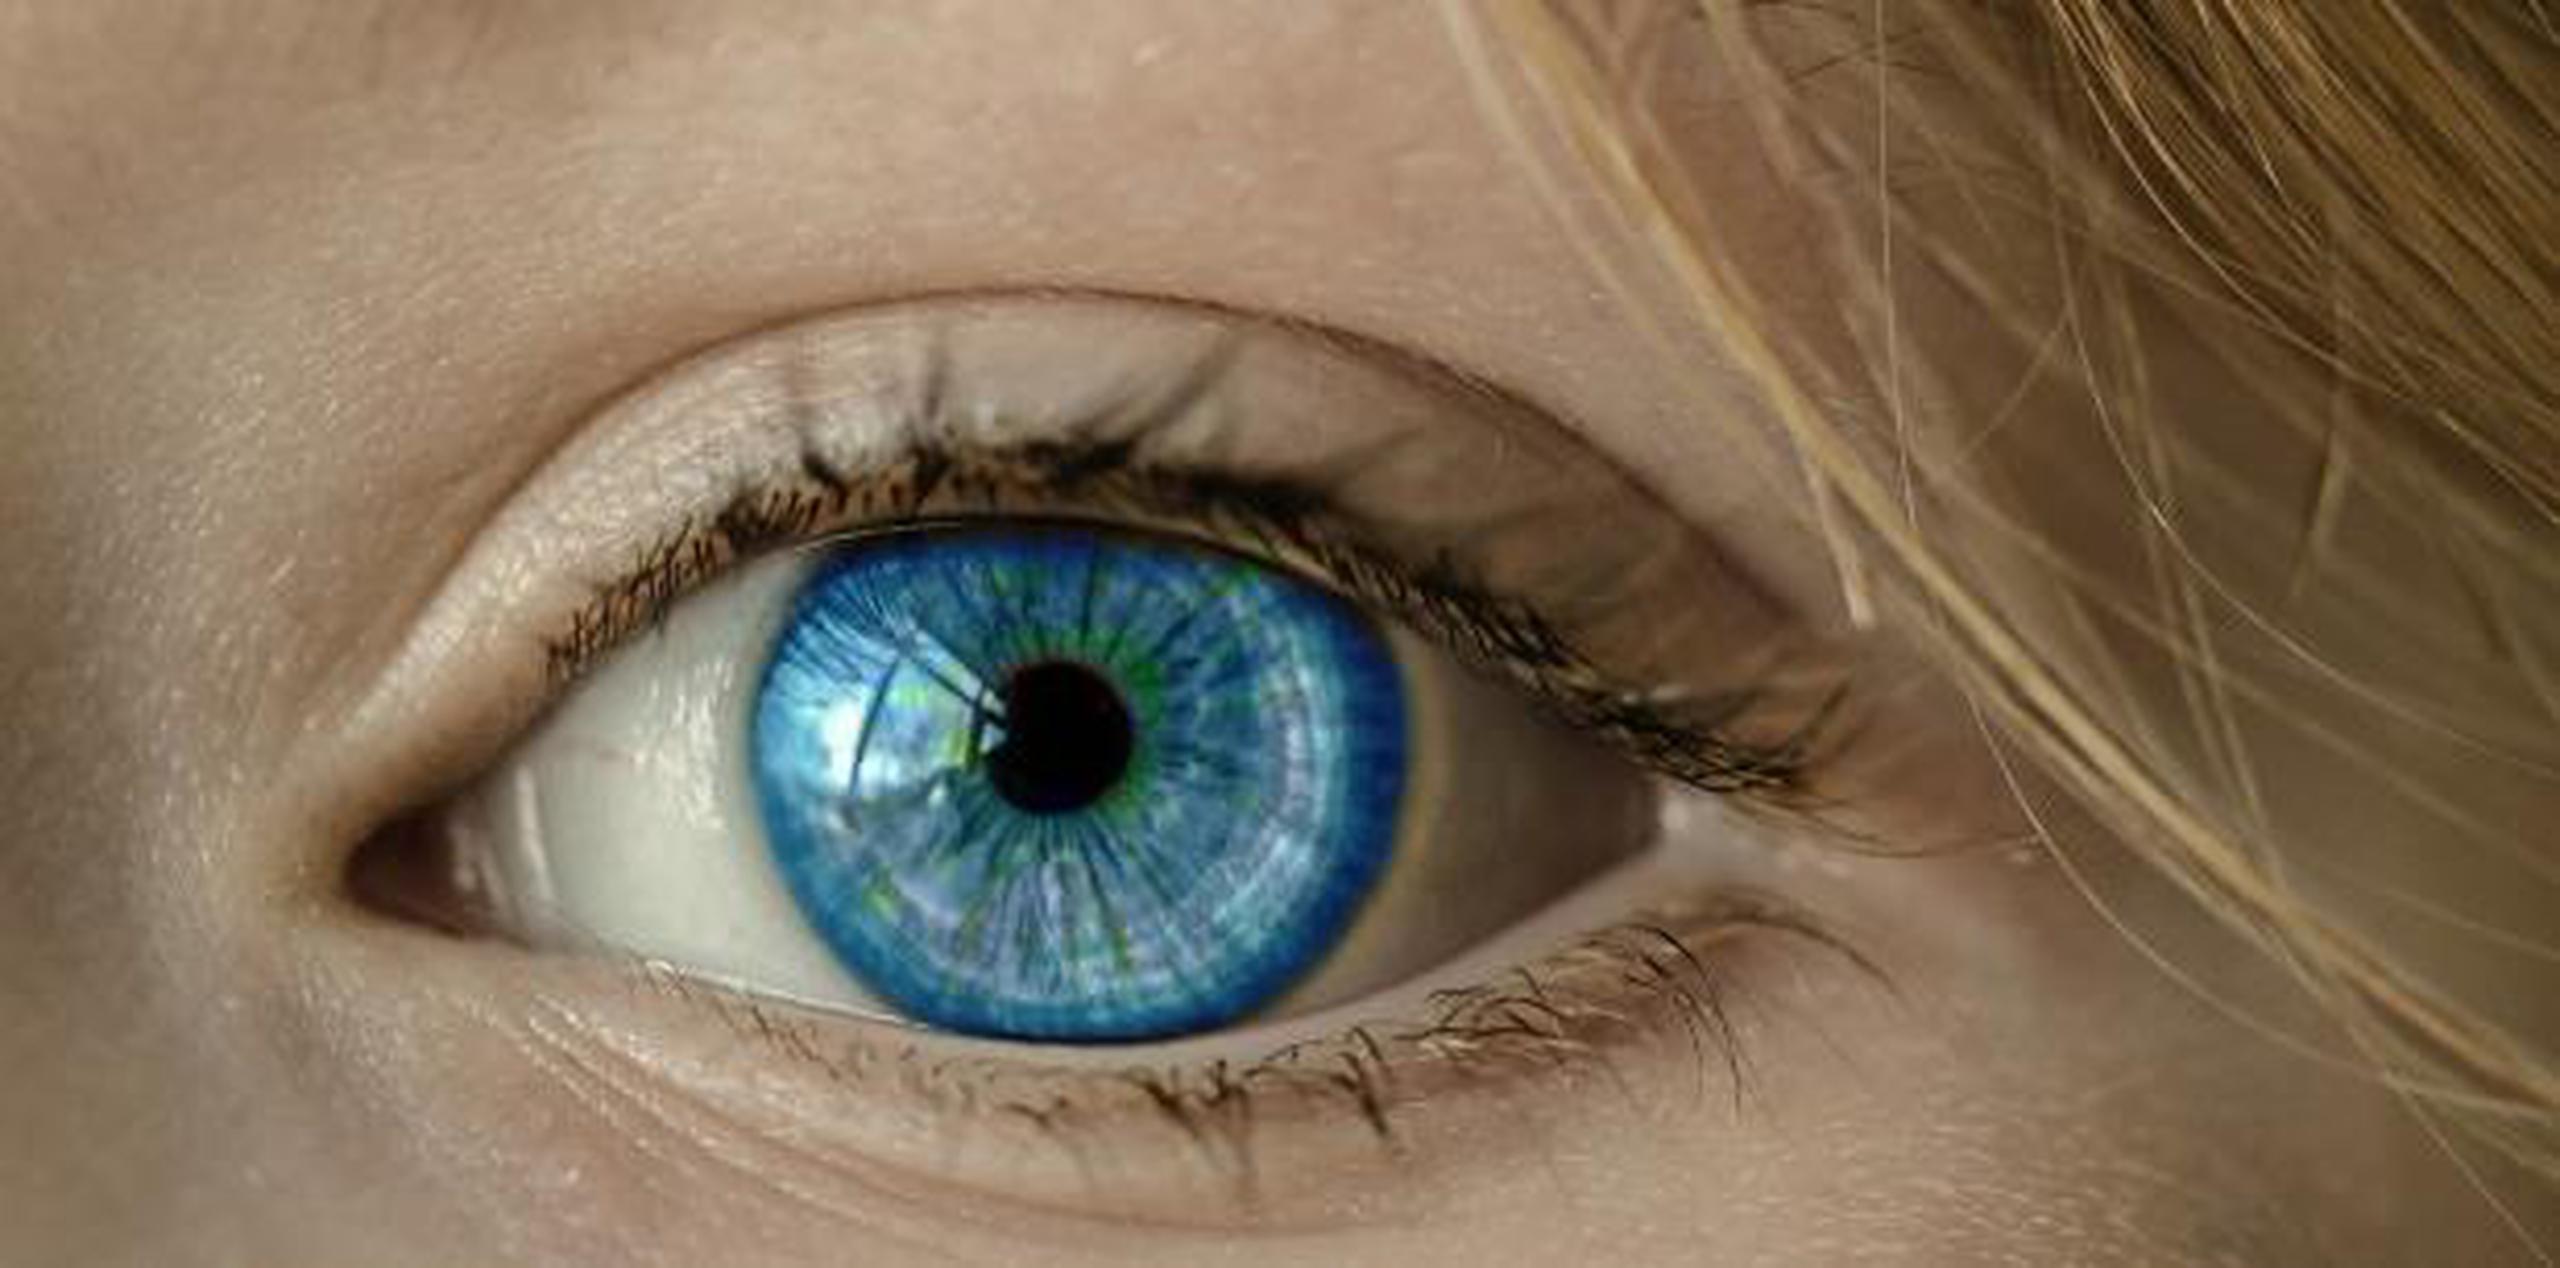 Según la Organización Mundial de la Salud (OMS), los errores refractivos no corregidos son la causa más común de ceguera en el mundo. (Archivo)